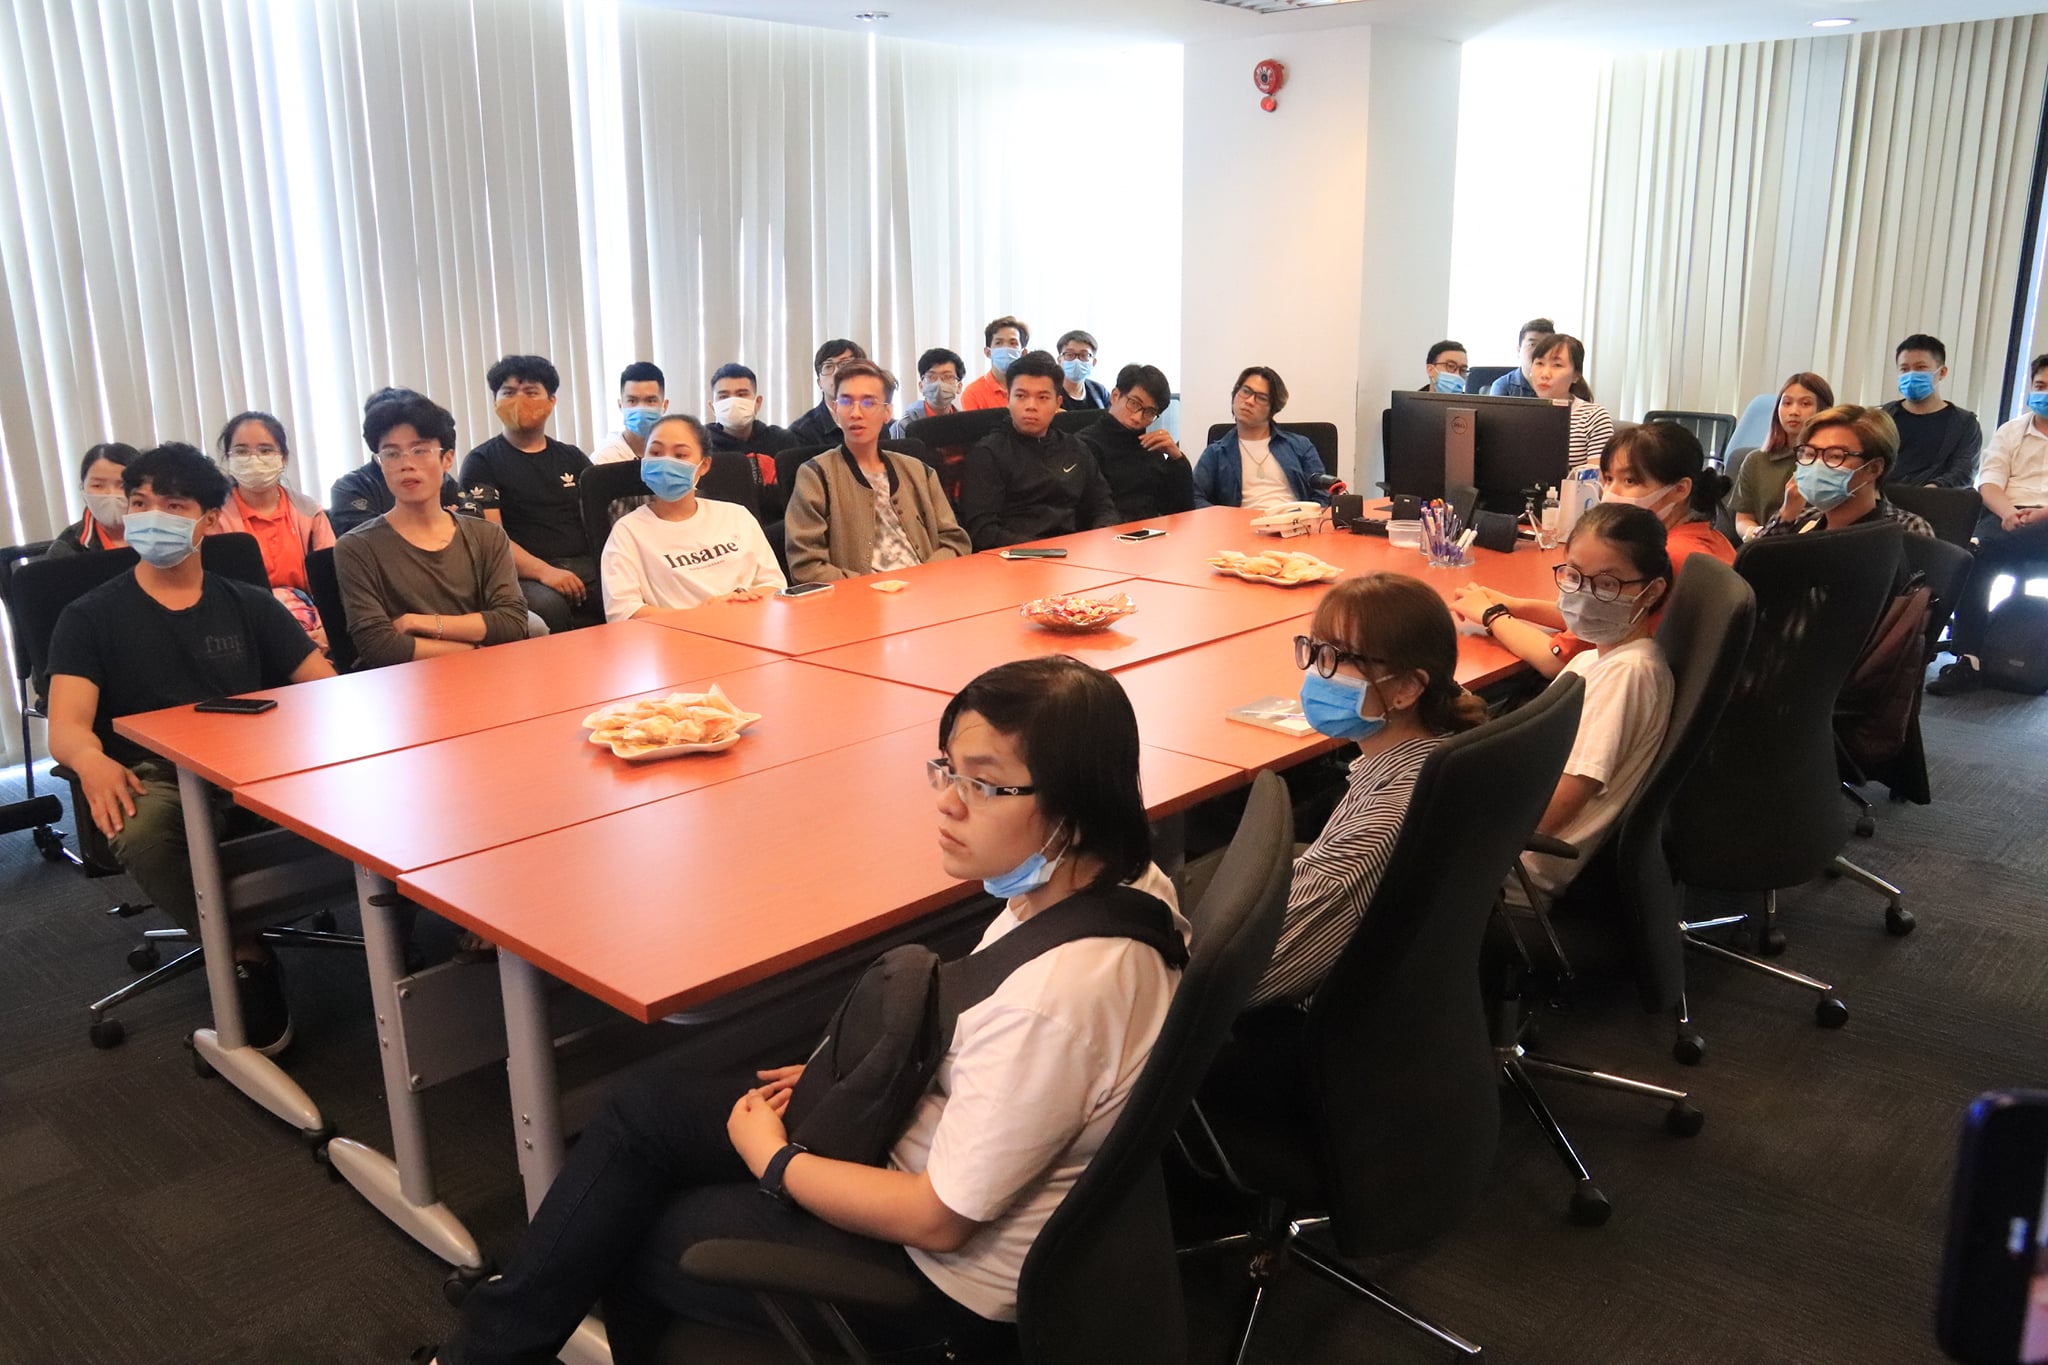 Các bạn sinh viên đang chăm chú lắng nghe những thông tin về doanh nghiệp và những kiến thức hữu ích về ngành 3D